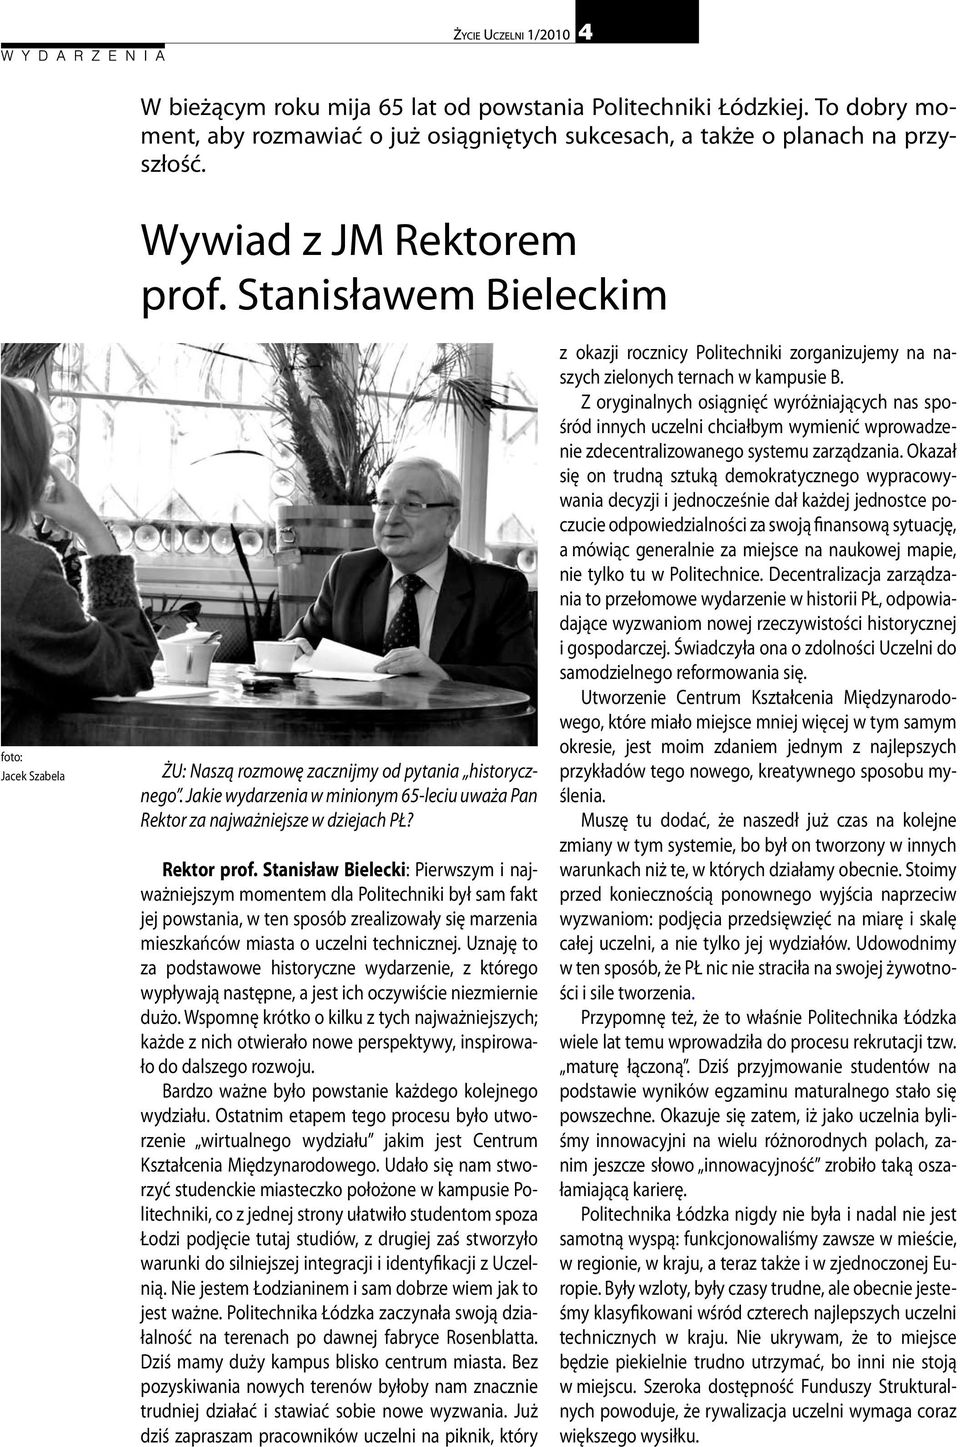 Stanisław Bielecki: Pierwszym i najważniejszym momentem dla Politechniki był sam fakt jej powstania, w ten sposób zrealizowały się marzenia mieszkańców miasta o uczelni technicznej.